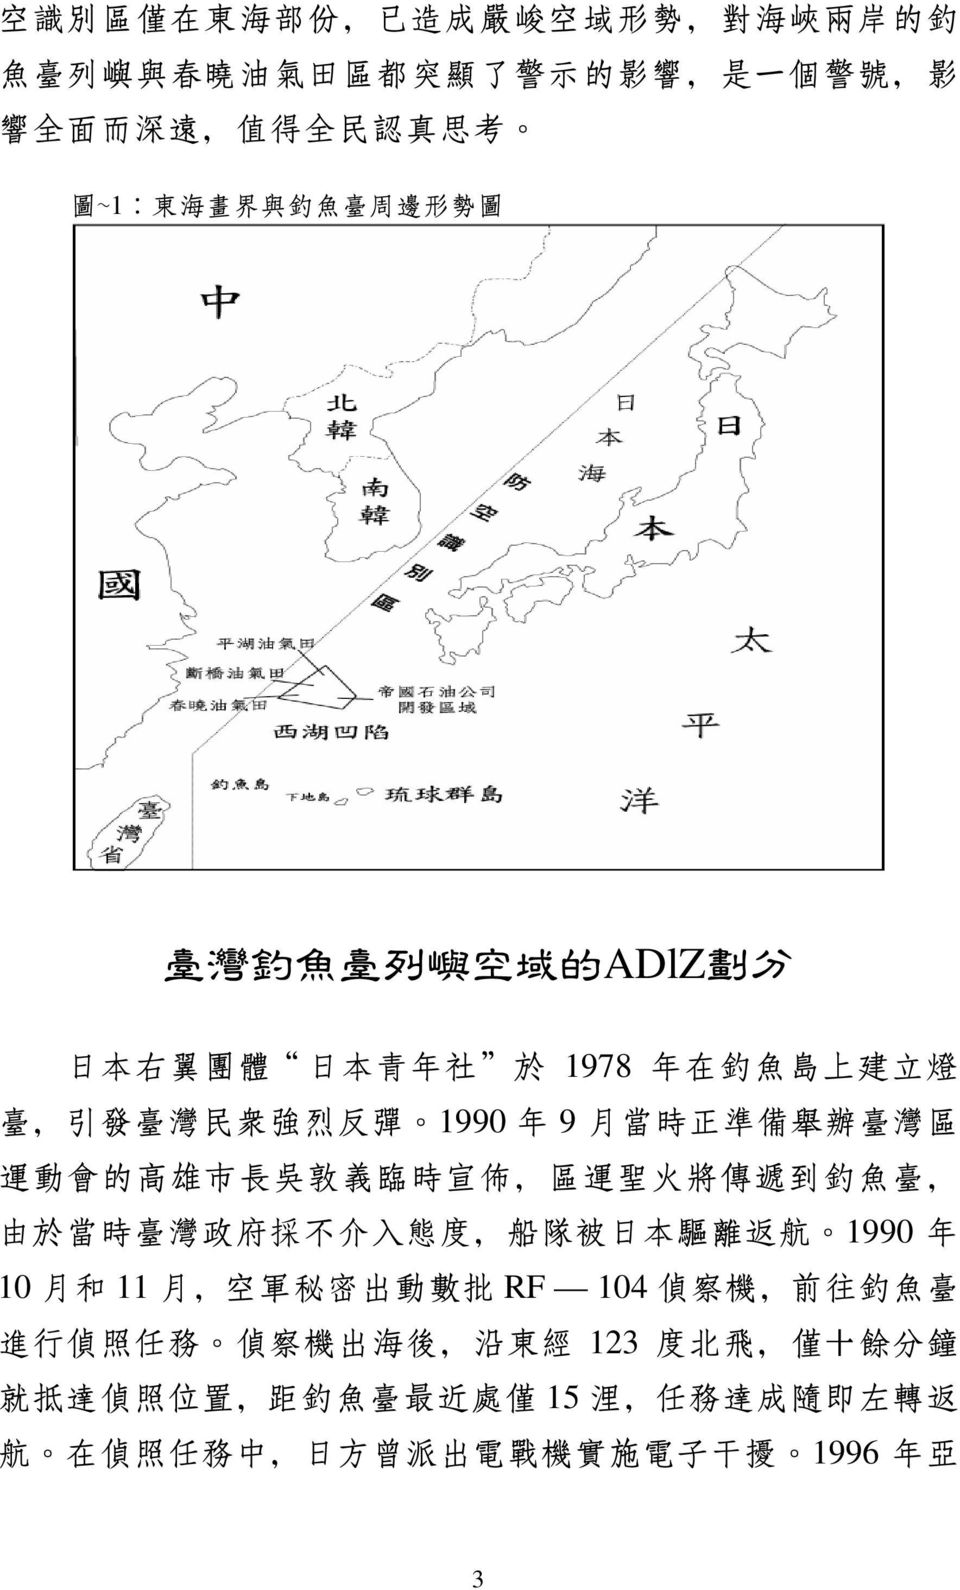 臨 時 宣 佈, 區 運 聖 火 將 傳 遞 到 釣 魚 臺, 由 於 當 時 臺 灣 政 府 採 不 介 入 態 度, 船 隊 被 日 本 驅 離 返 航 1990 年 10 月 和 11 月, 空 軍 秘 密 出 動 數 批 RF 104 偵 察 機, 前 往 釣 魚 臺 進 行 偵 照 任